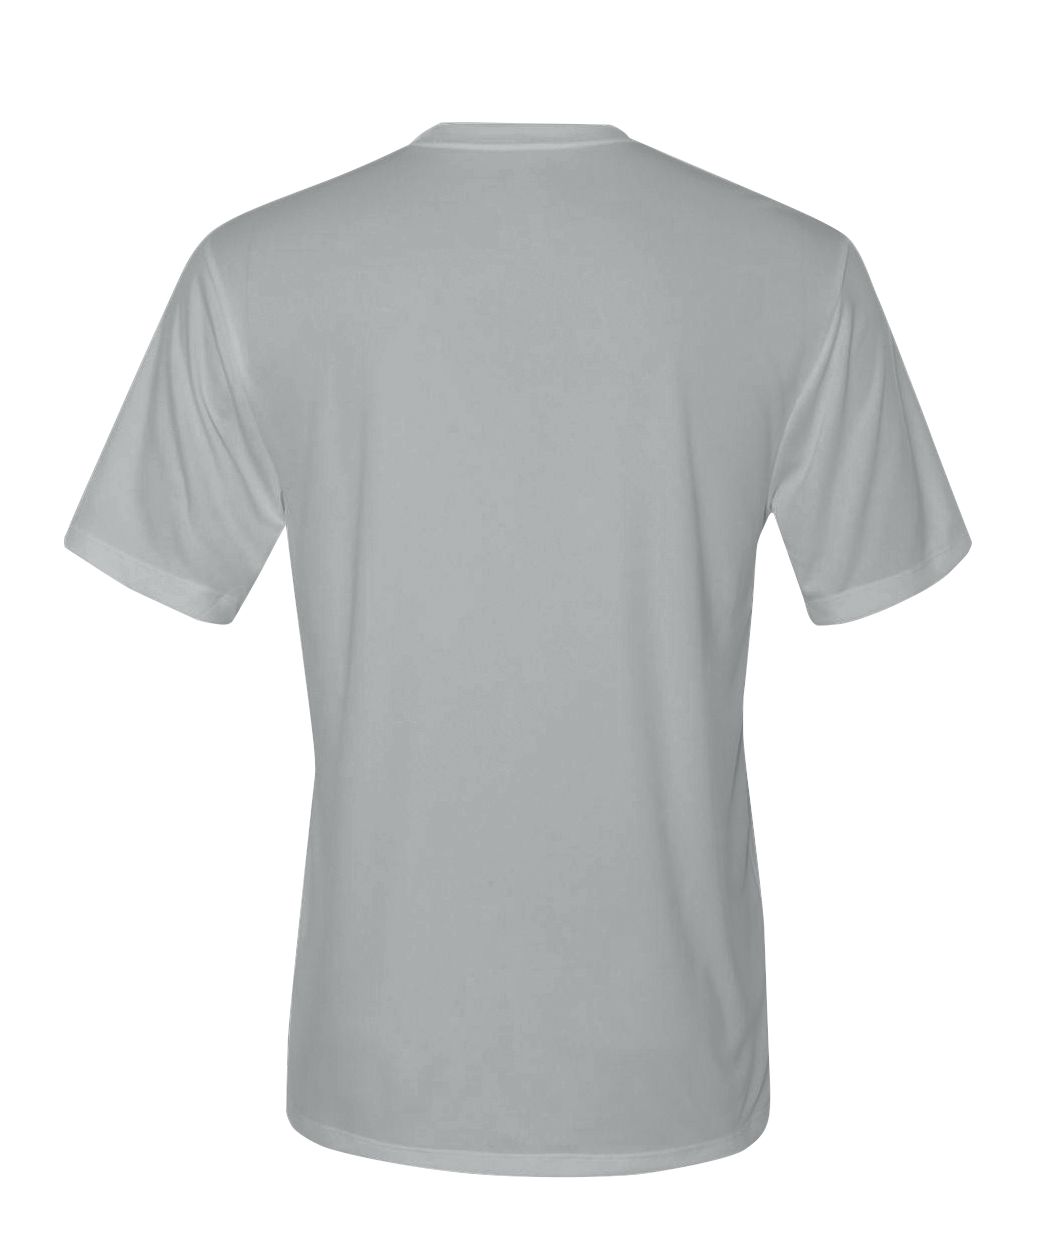 Dry Fit Short Sleeve (White Logo)